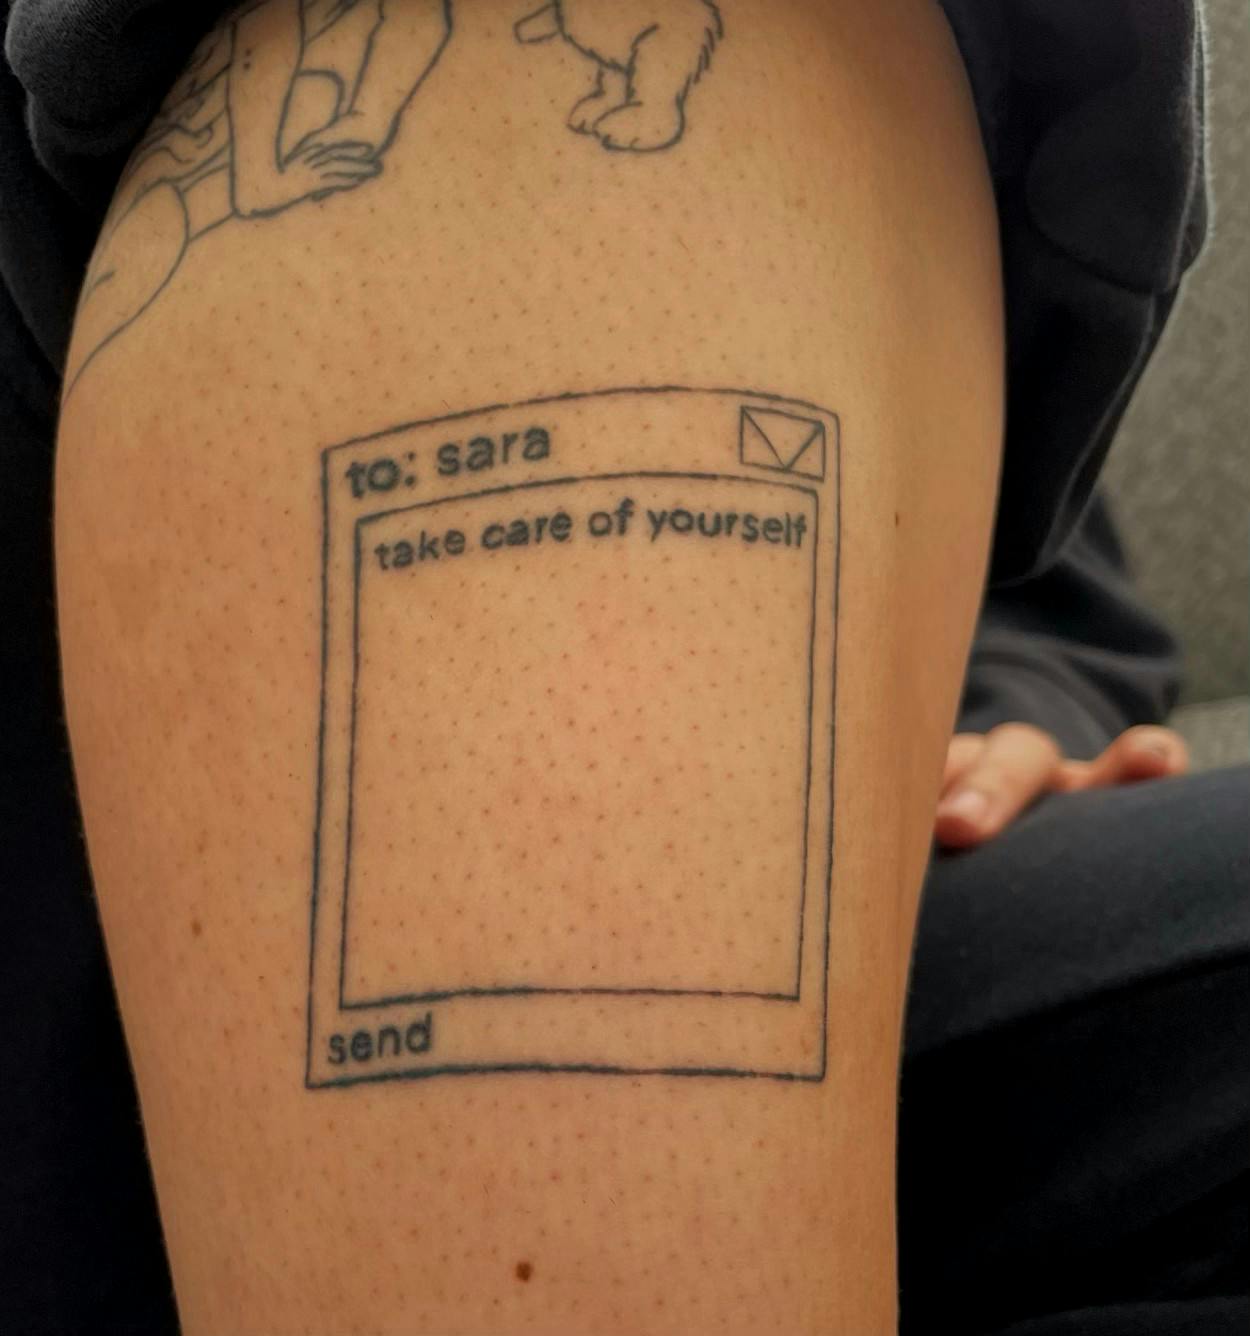 Do Calf Tattoos Hurt? A Comprehensive Guide